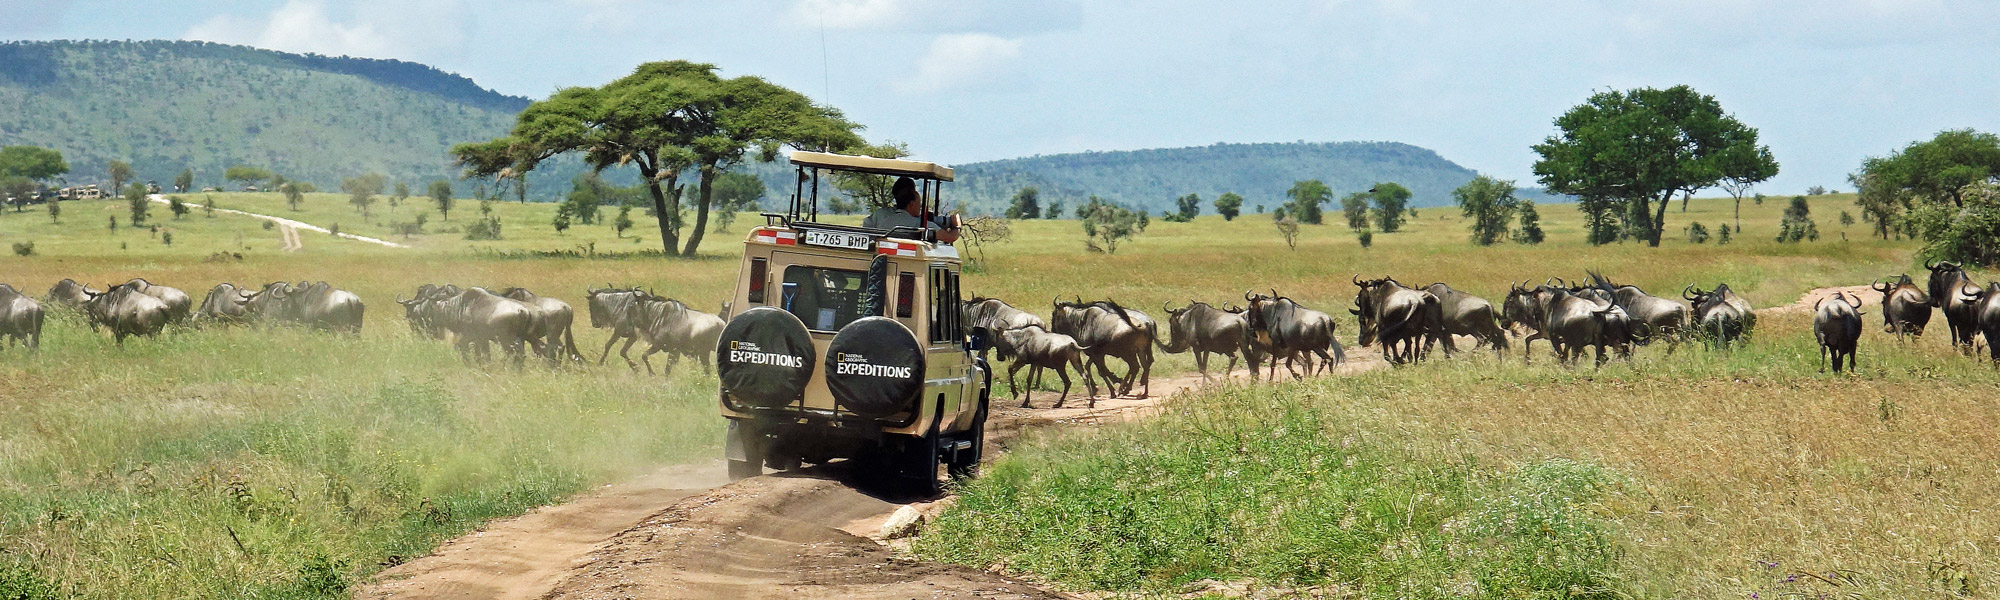 auf Safari in Tansania